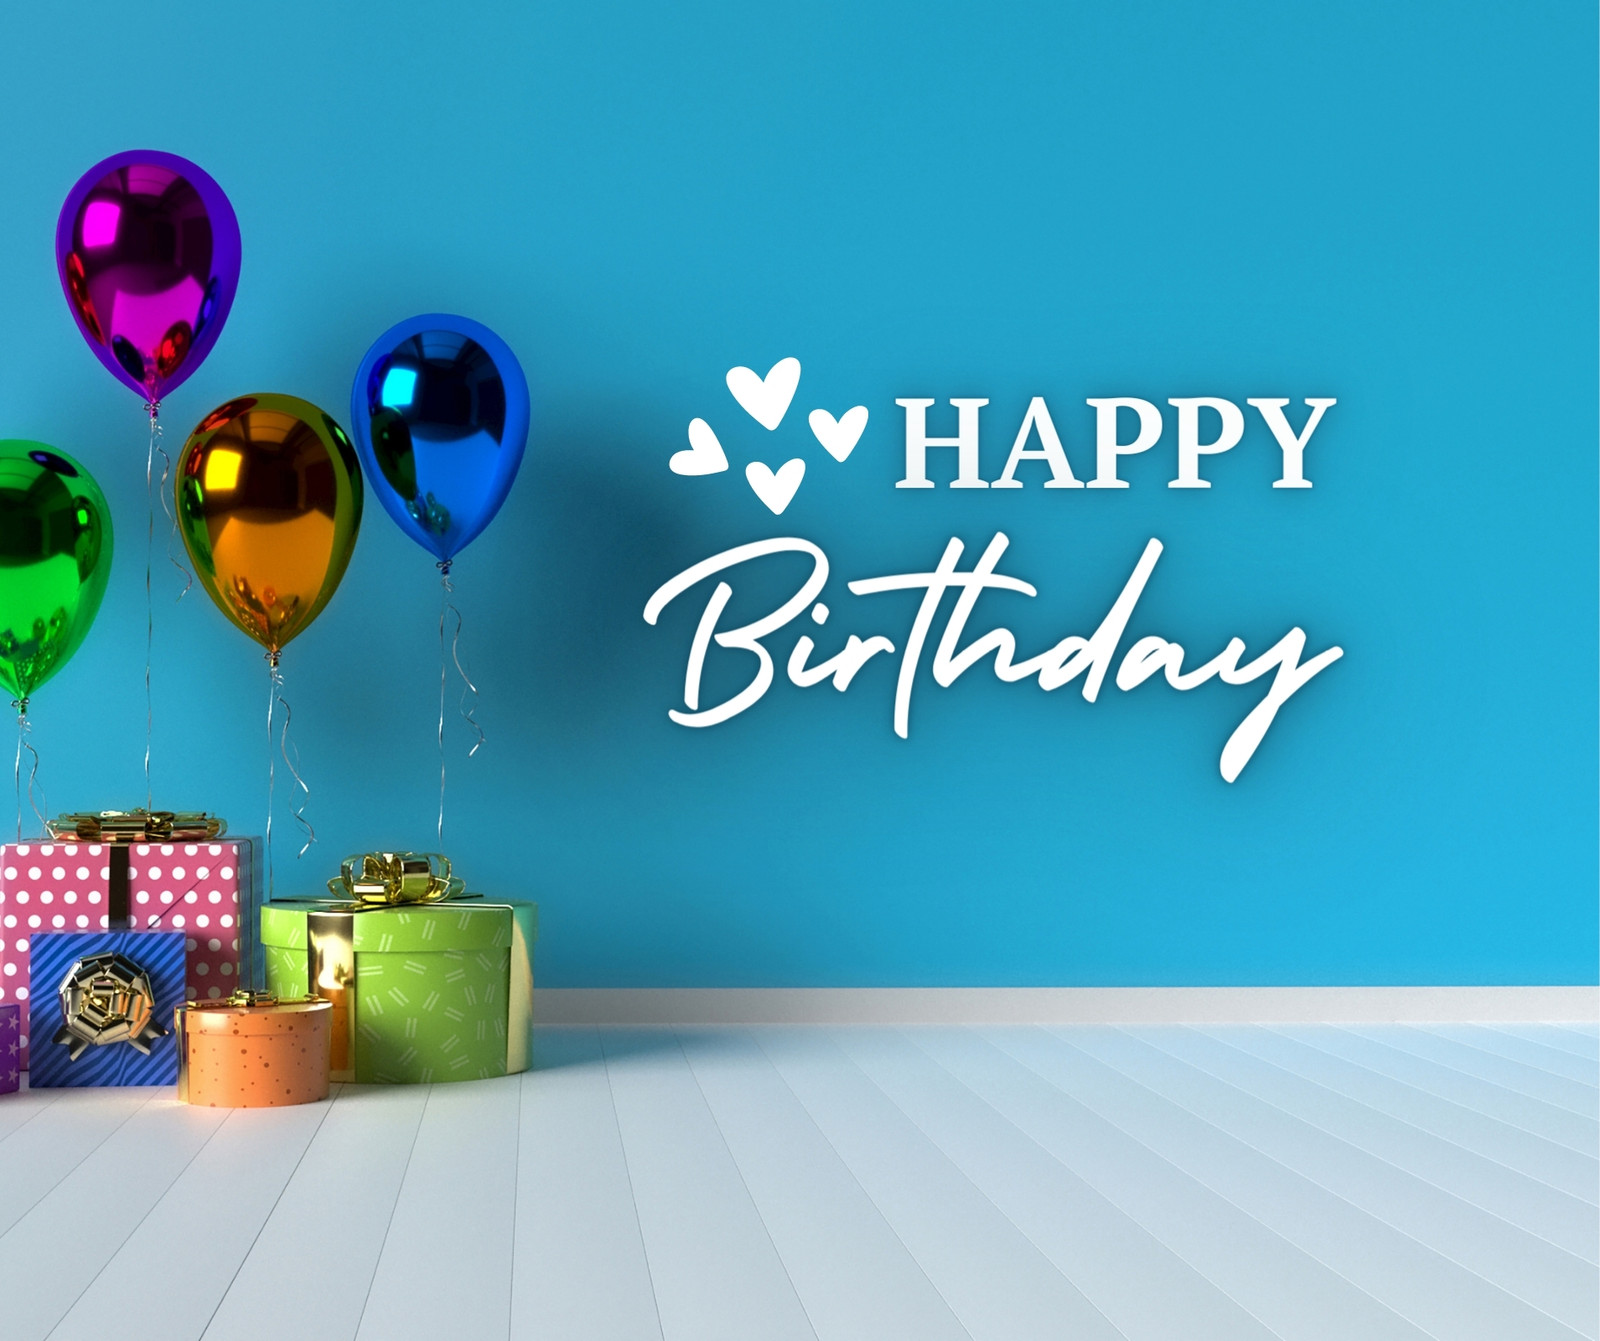 Hôm nay là sinh nhật bạn thân của bạn và bạn muốn chọn một mẫu đăng bài sinh nhật trên Facebook thật độc đáo? Hãy xem ngay hình ảnh liên quan để tìm kiếm những ý tưởng sáng tạo nhất để chúc mừng sinh nhật của người bạn yêu thương!